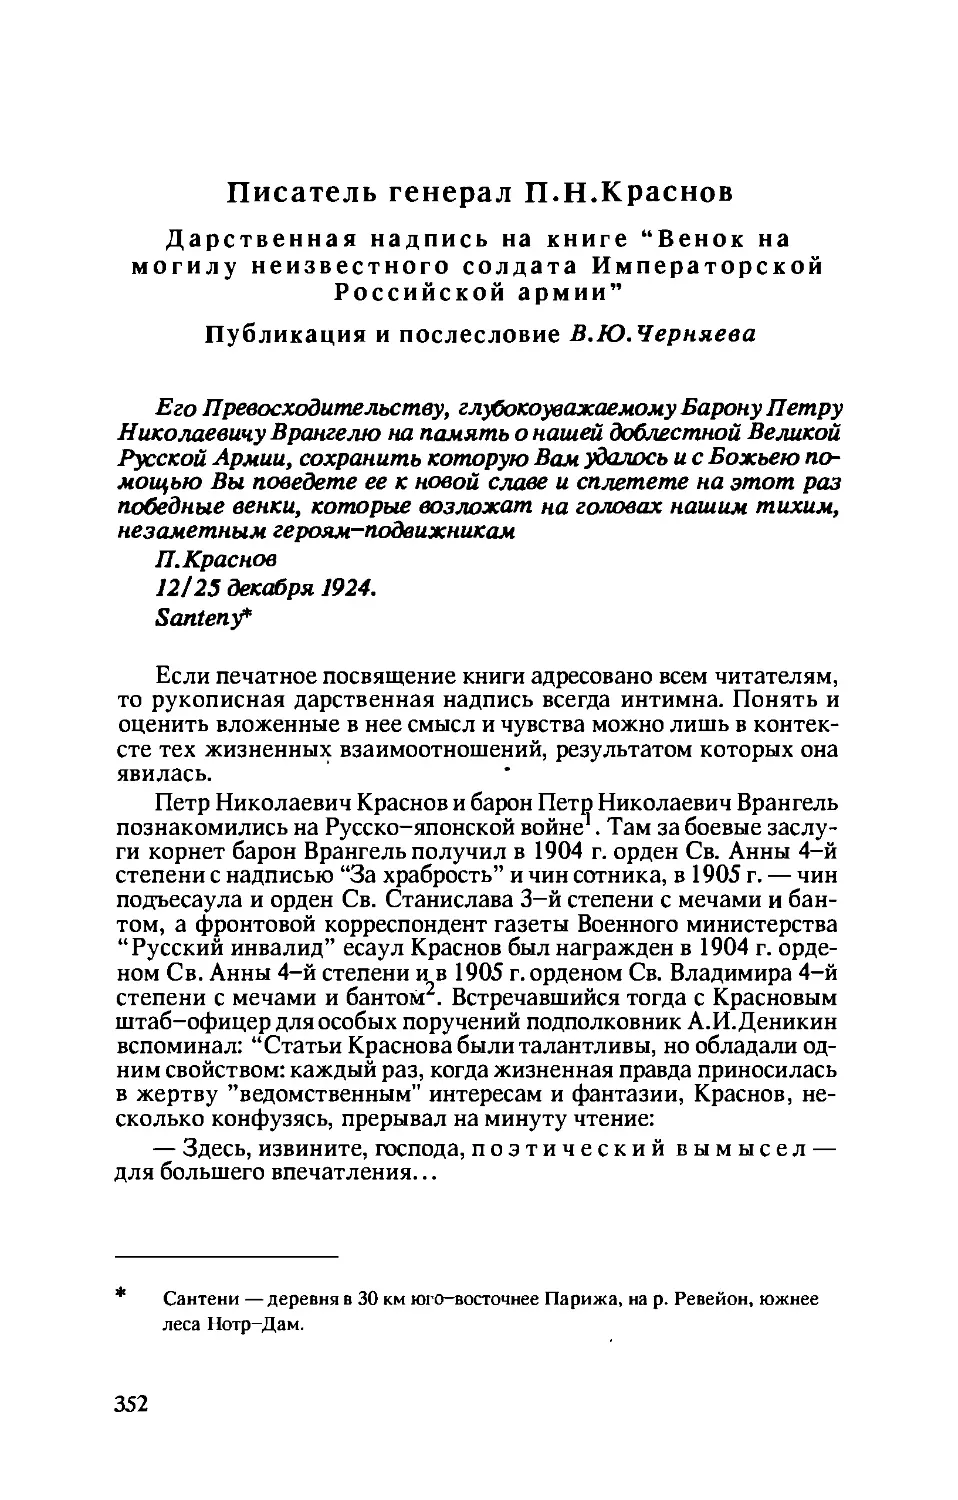 Писатель генерал П.Н. Краснов. Публикация В.Ю. Черняев